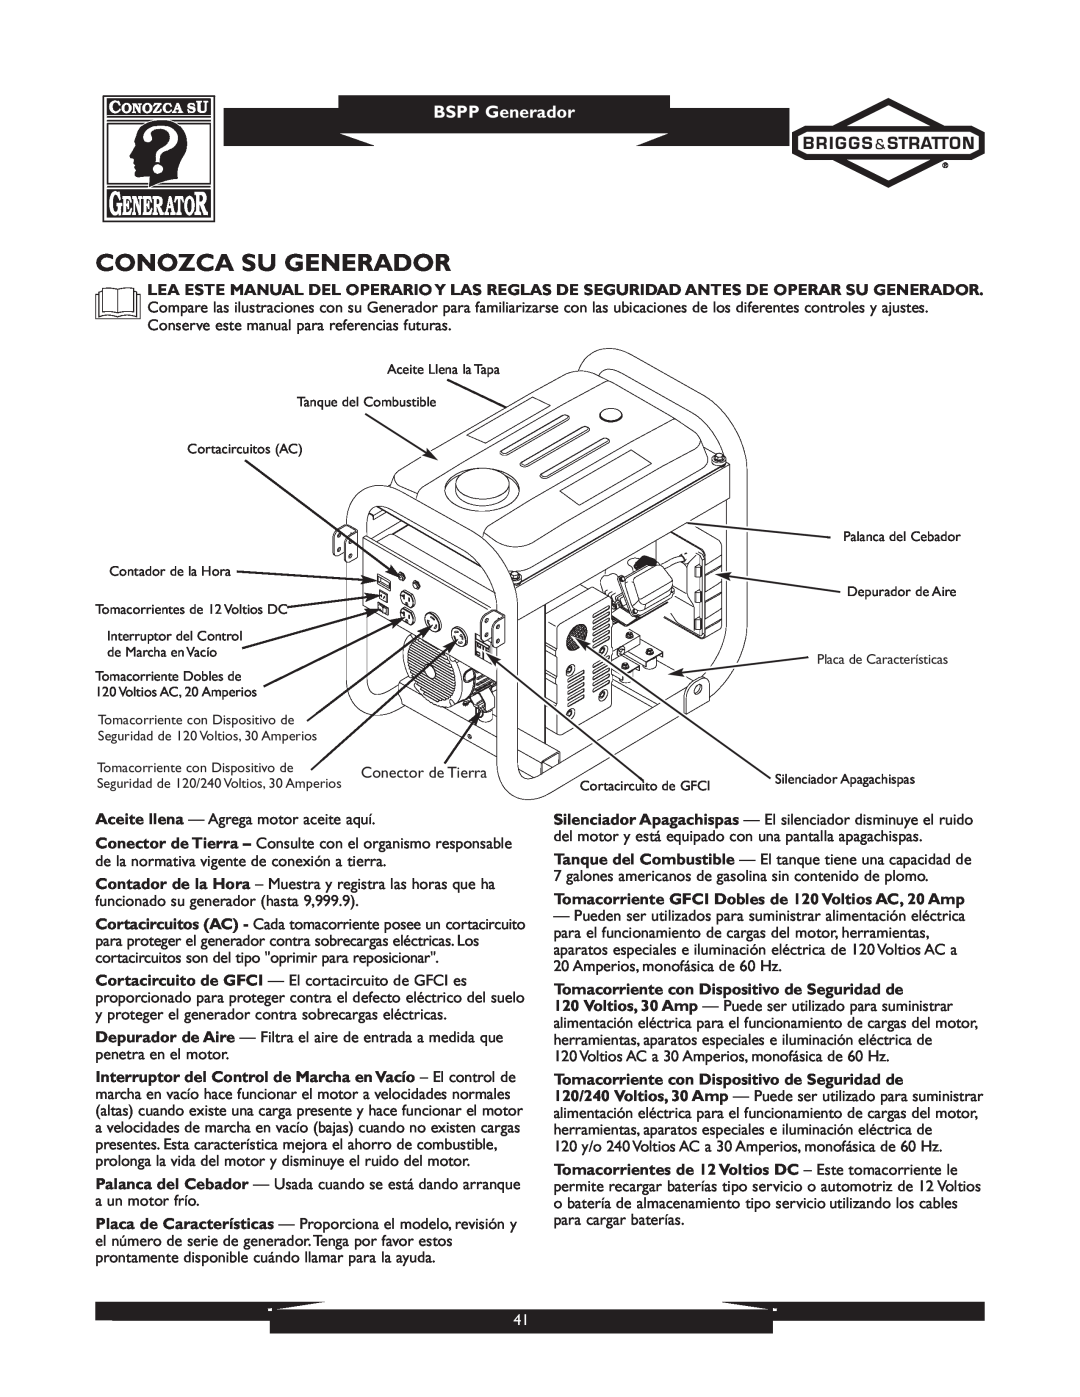 Briggs & Stratton 01933-1 manuel dutilisation Conozca Su Generador, BSPP Generador 